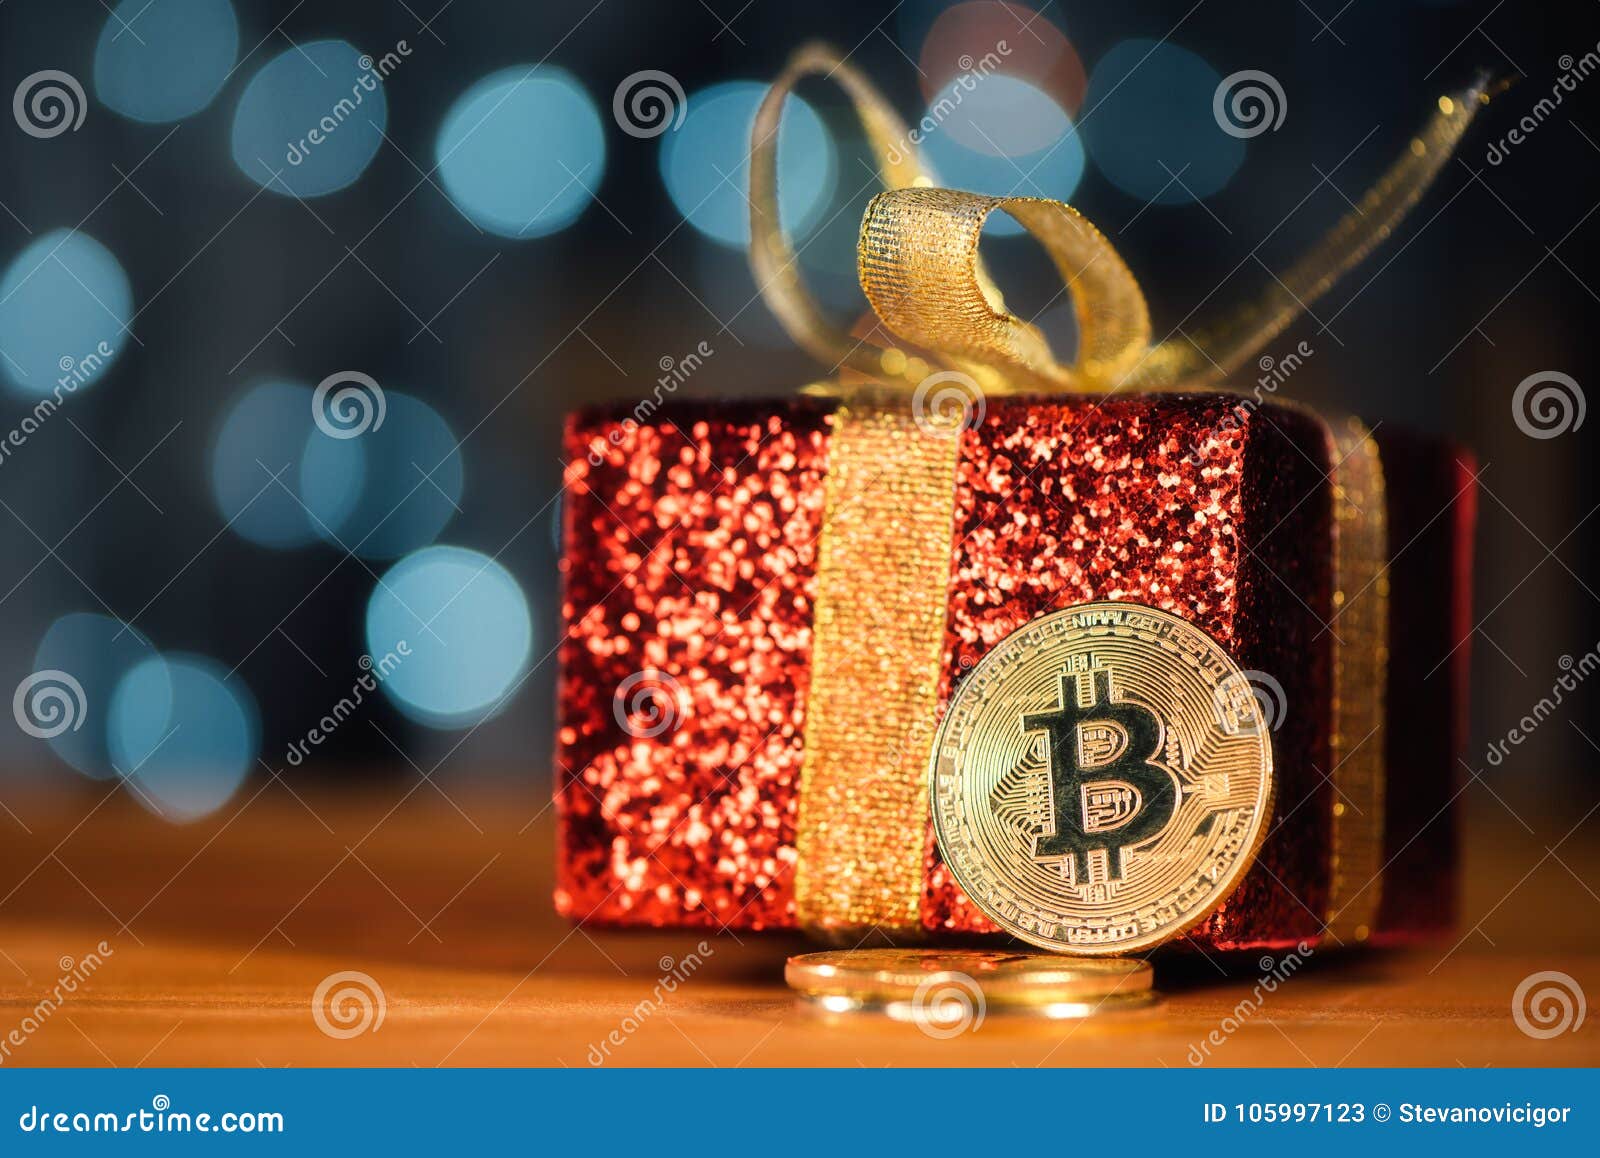 10 Regali di Natale straordinari per Acquistare con Bitcoin 2021 - Bitcoin on air